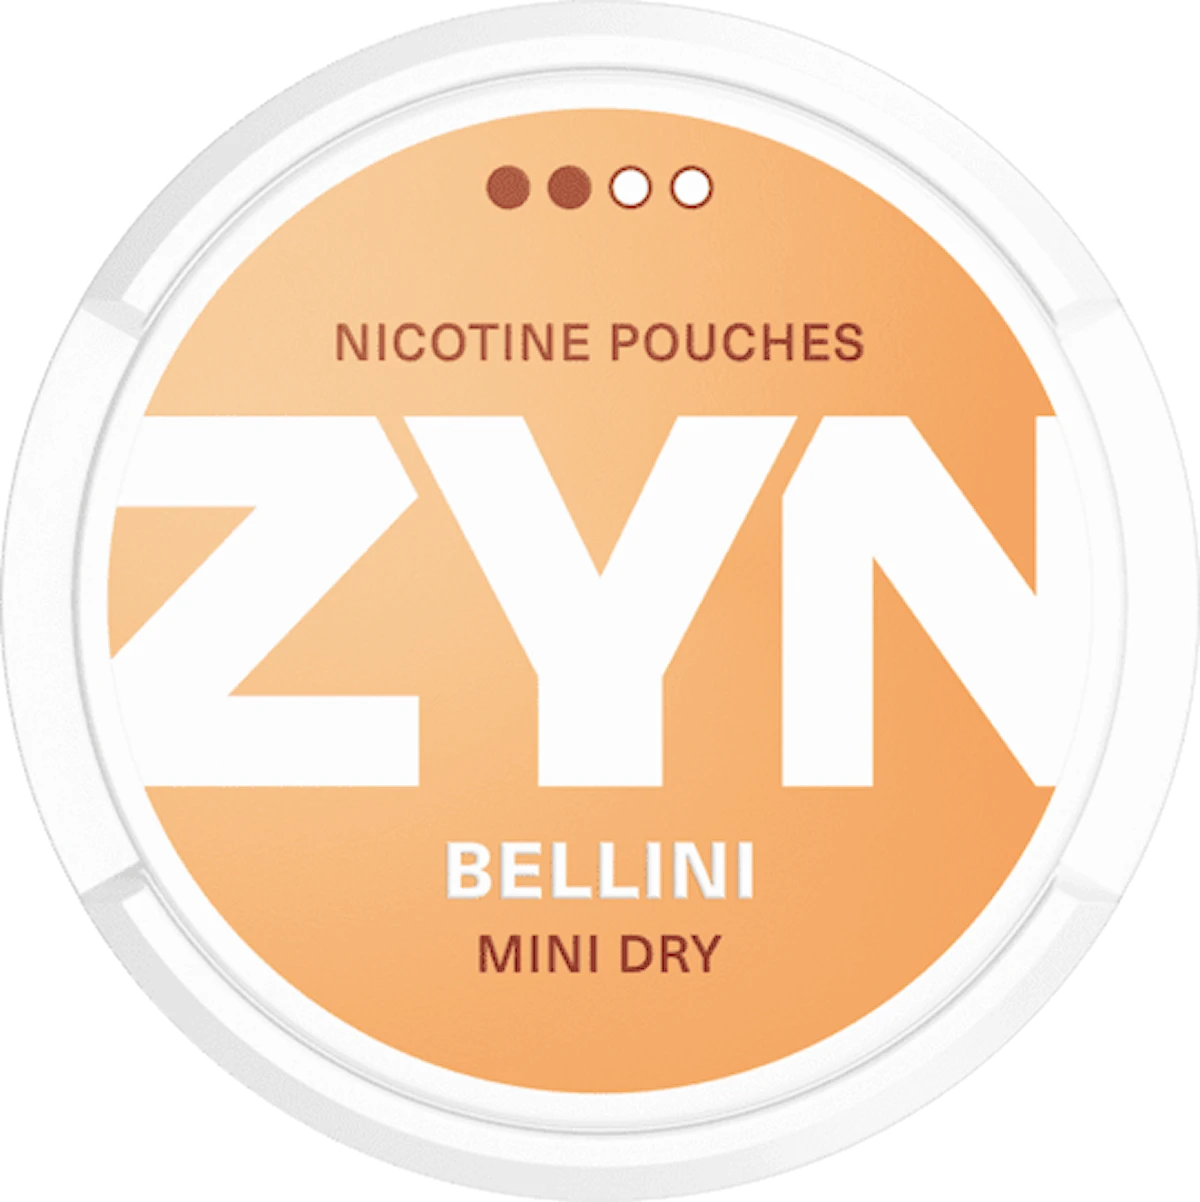 ZYN Bellini Mini Dry Normal